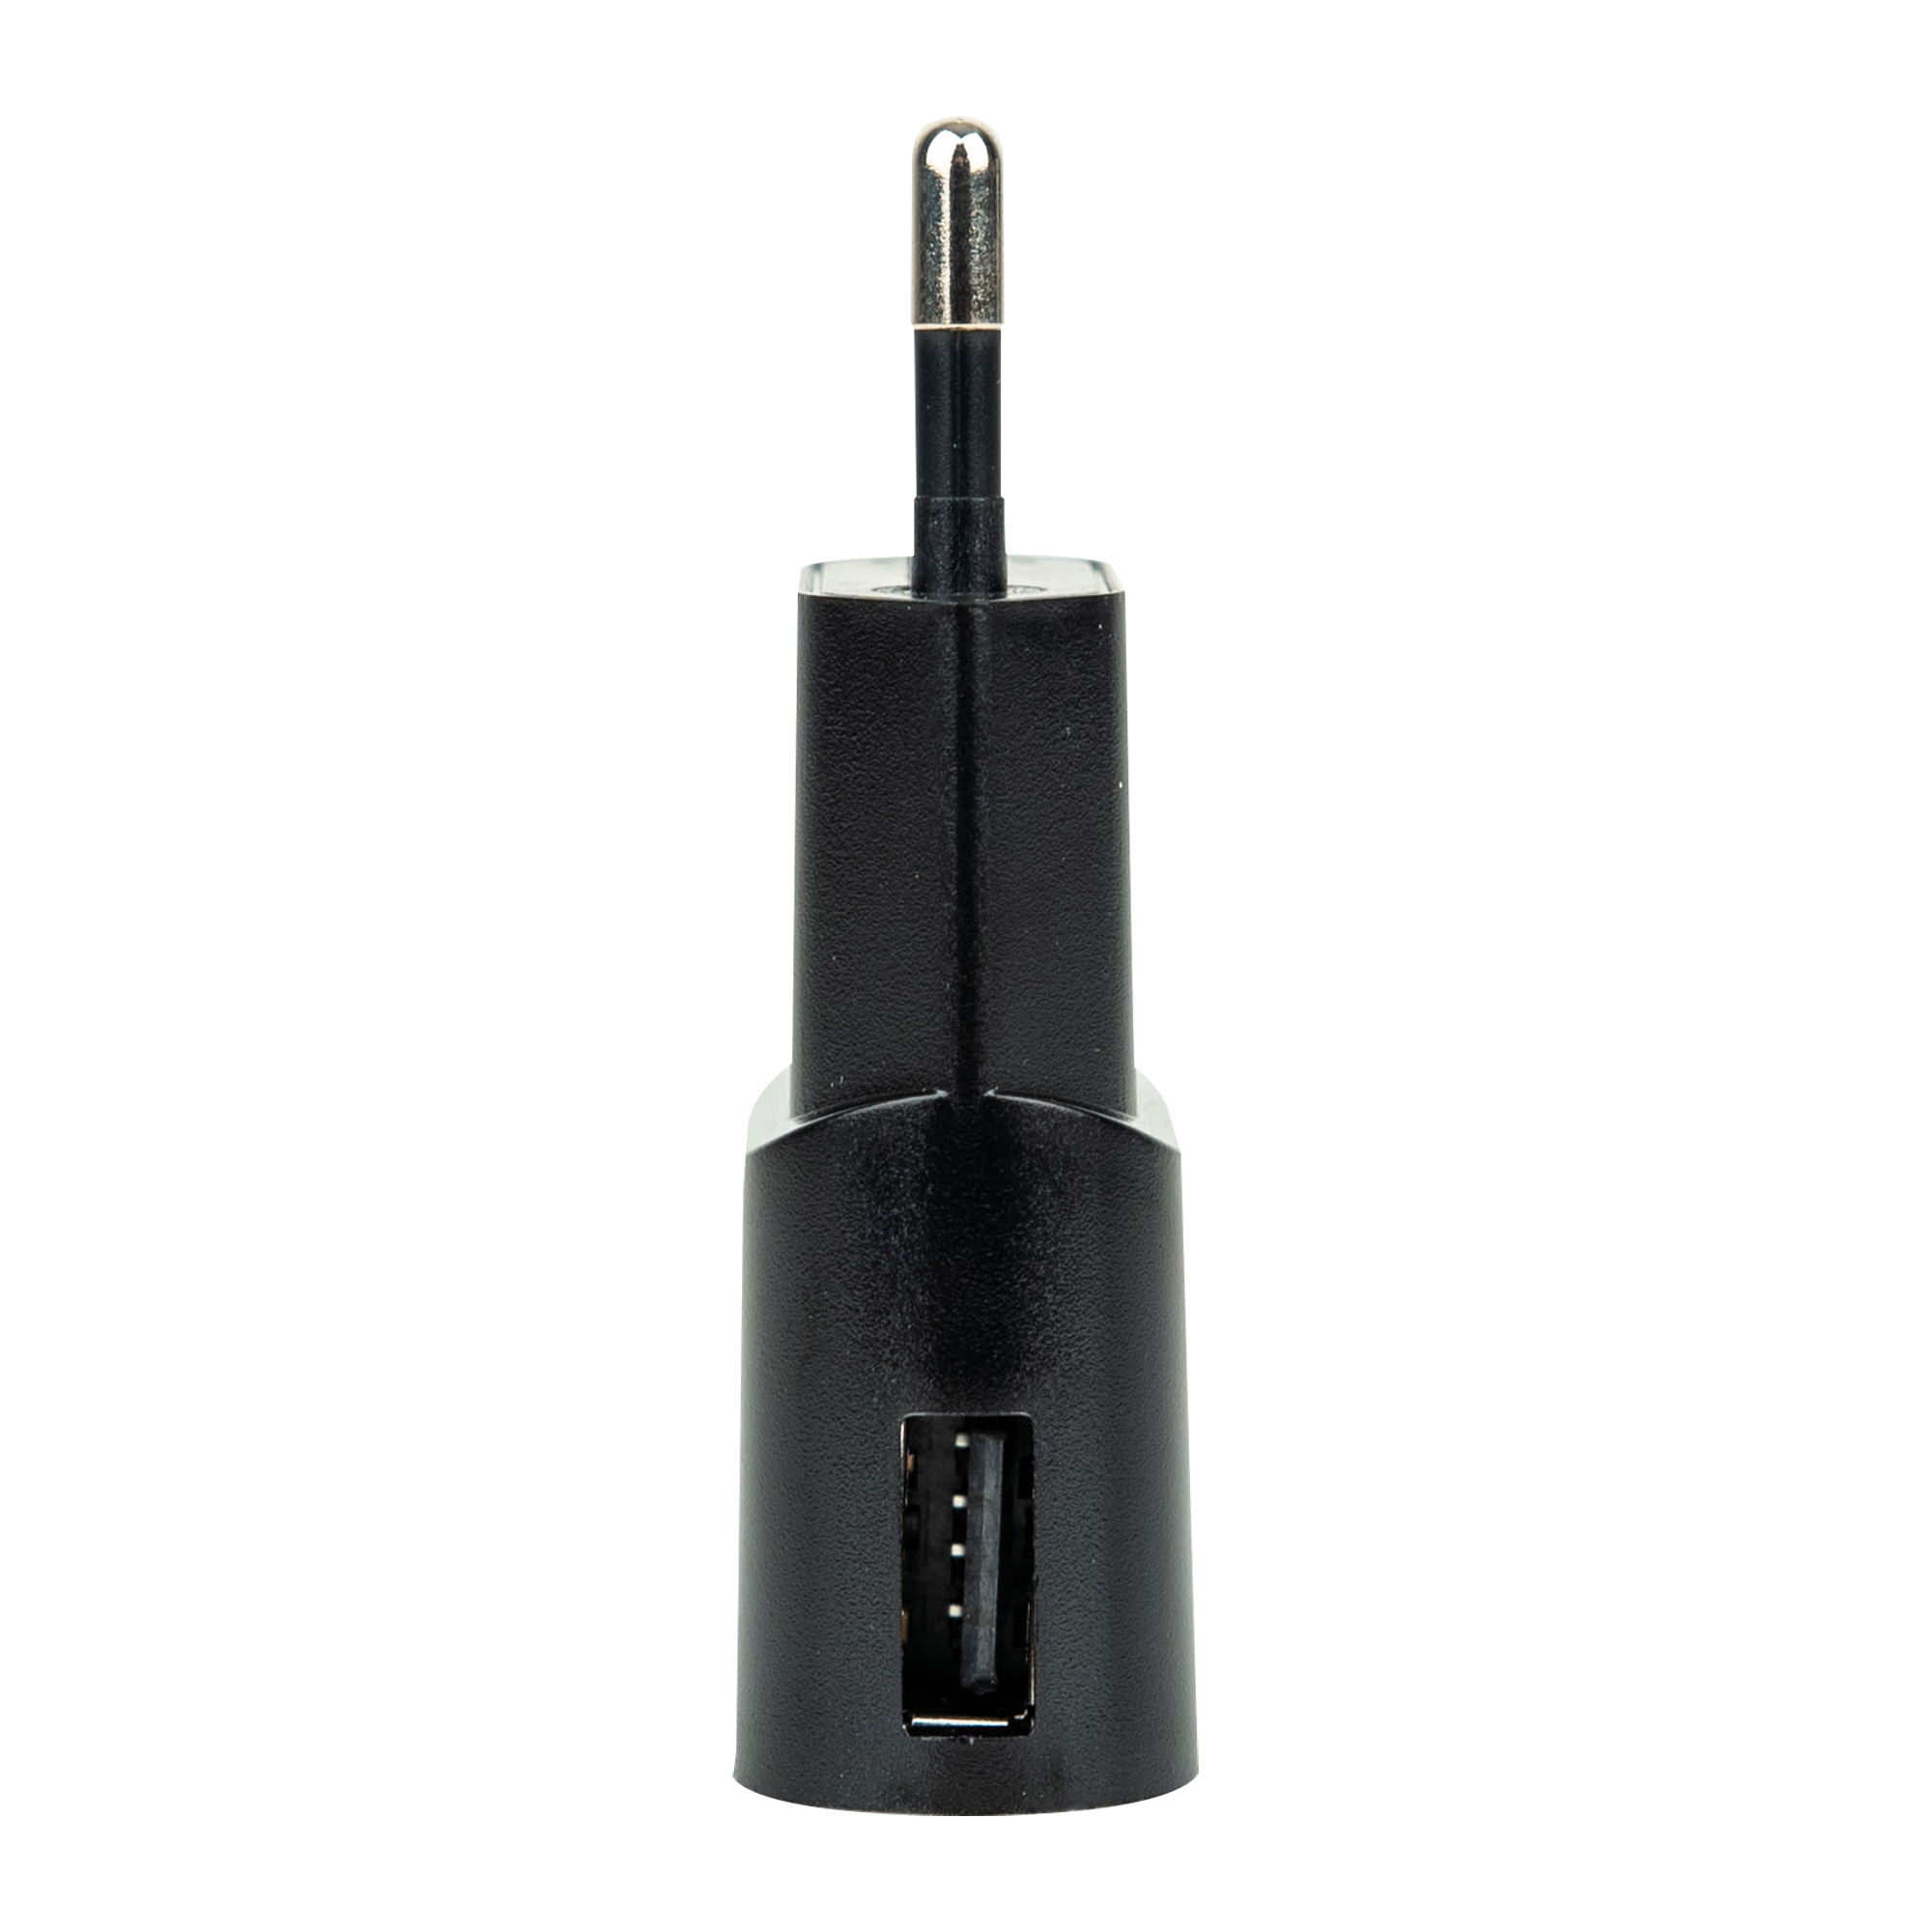 USB Power Supply 1000 mA - Onlinediscowinkel.nl